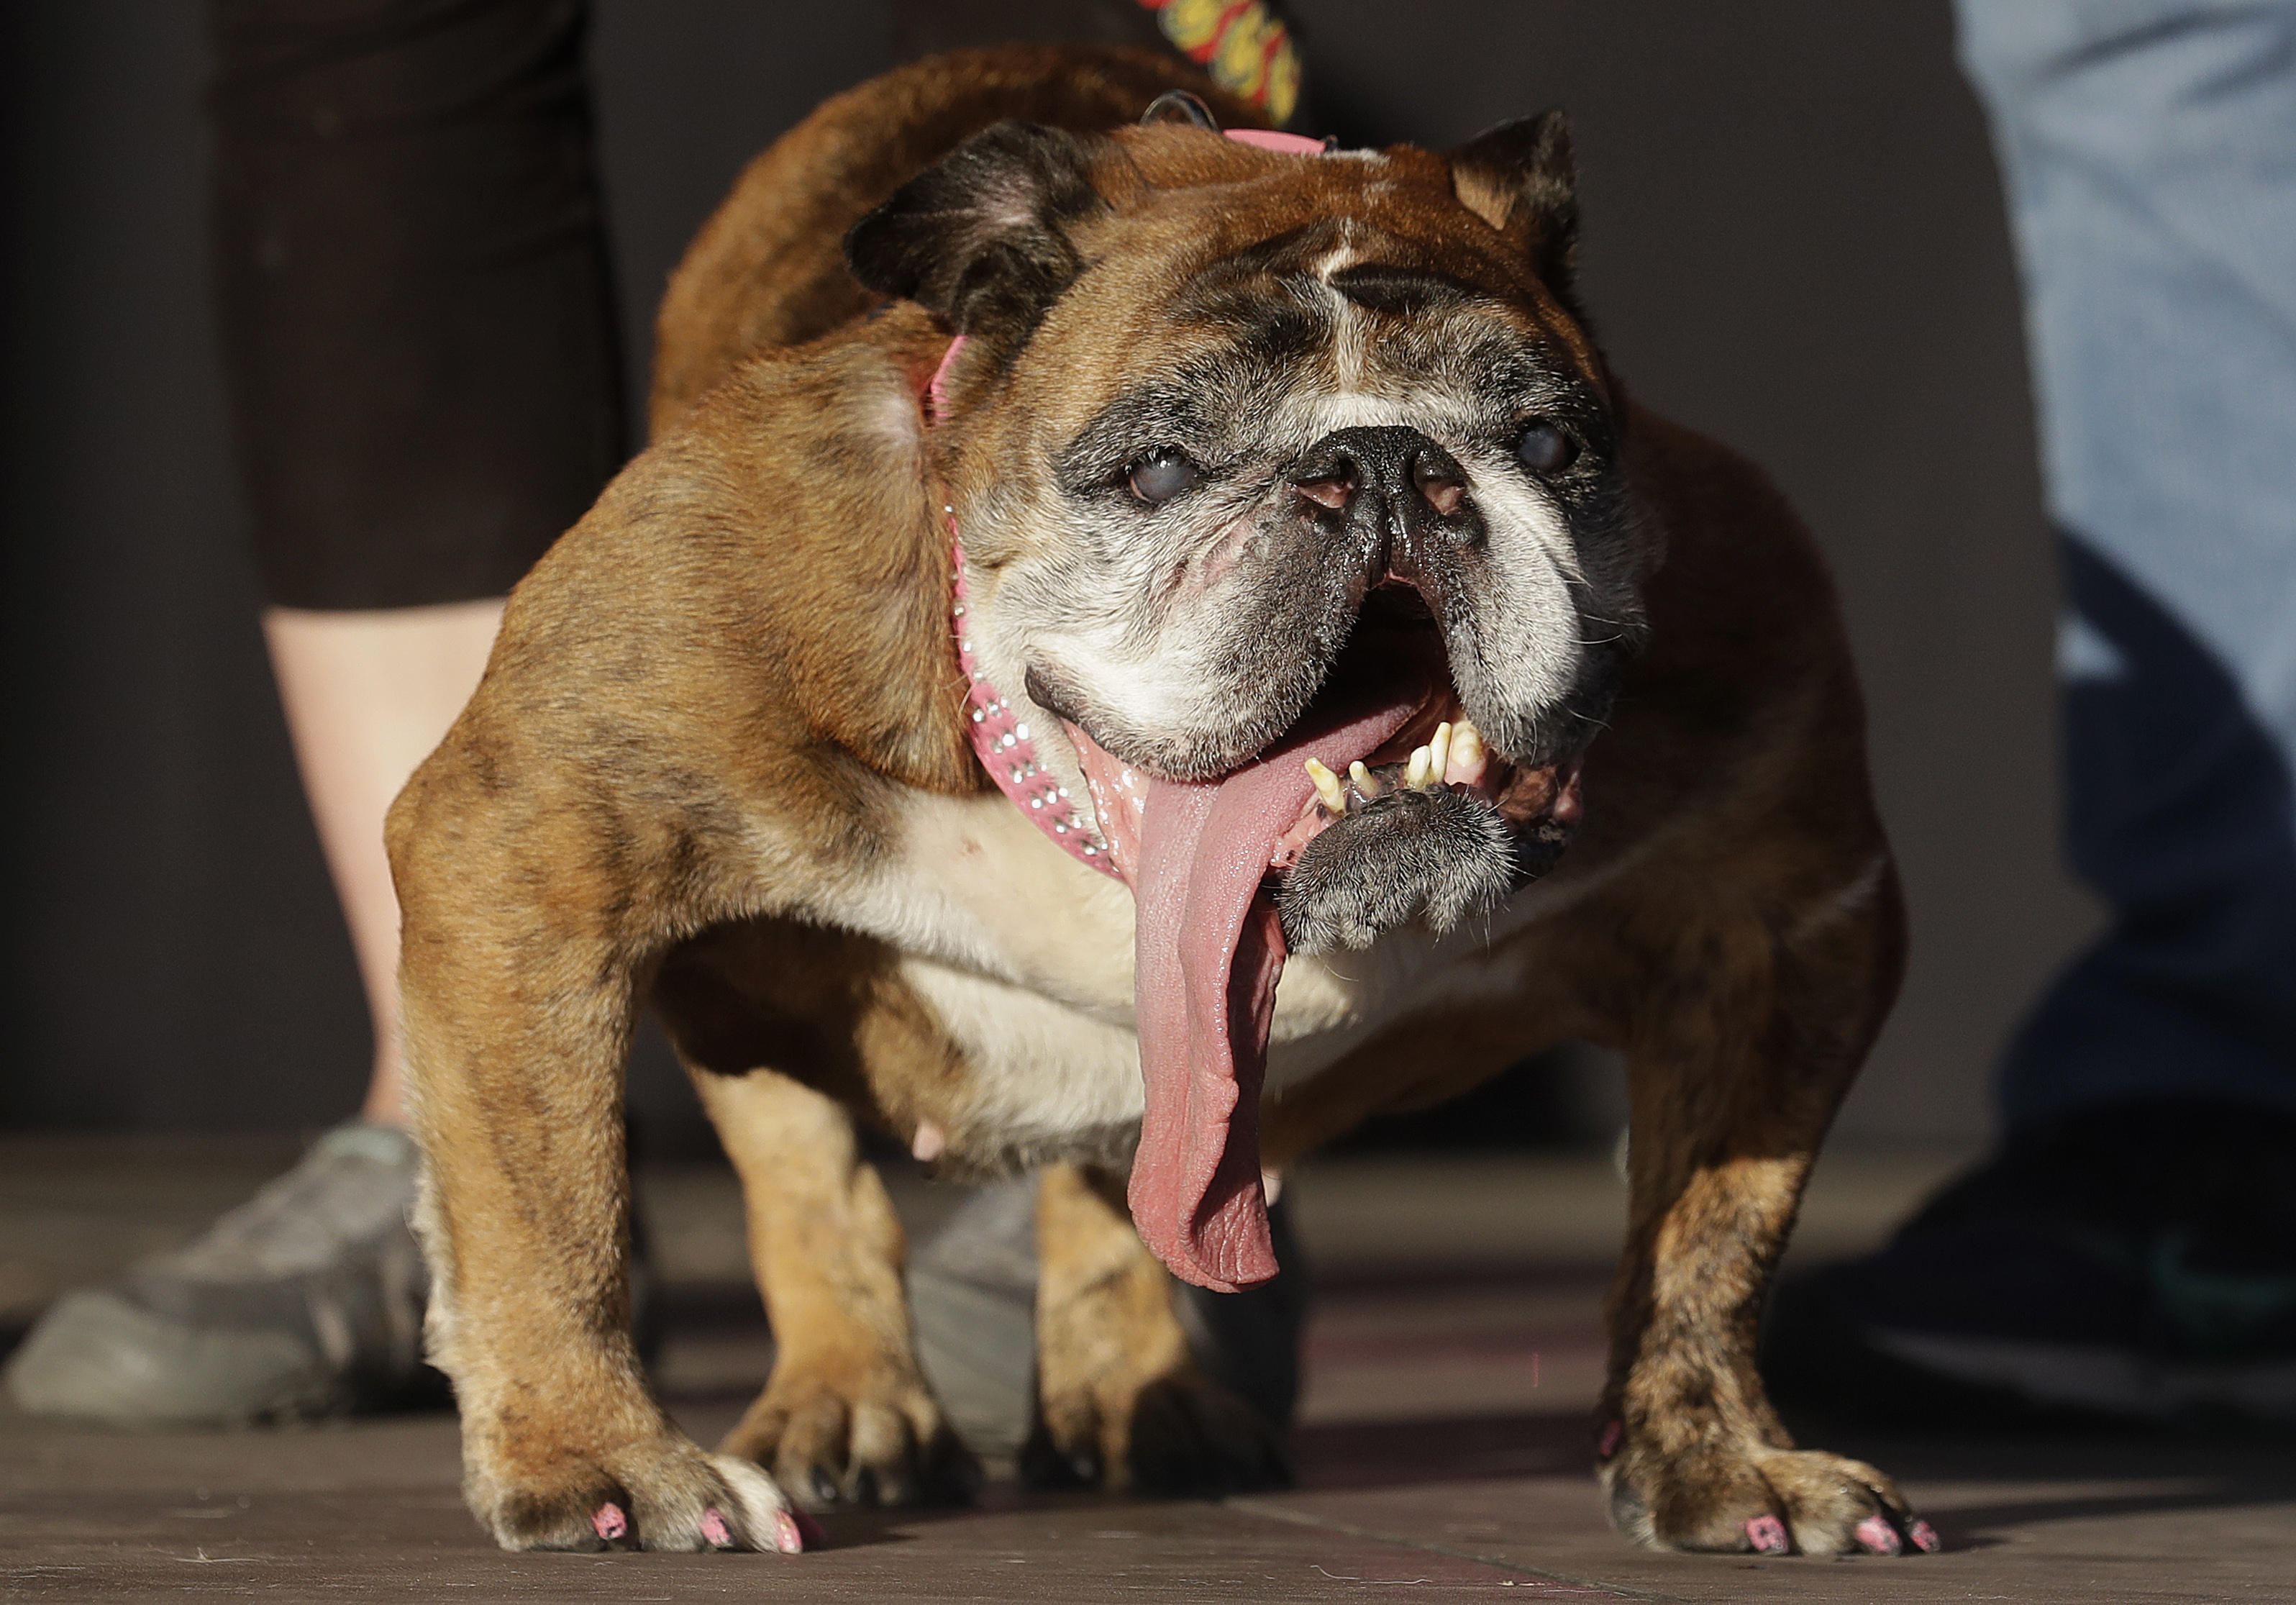 World's Ugliest Dog 2018: Zsa Zsa the English bulldog wins ...